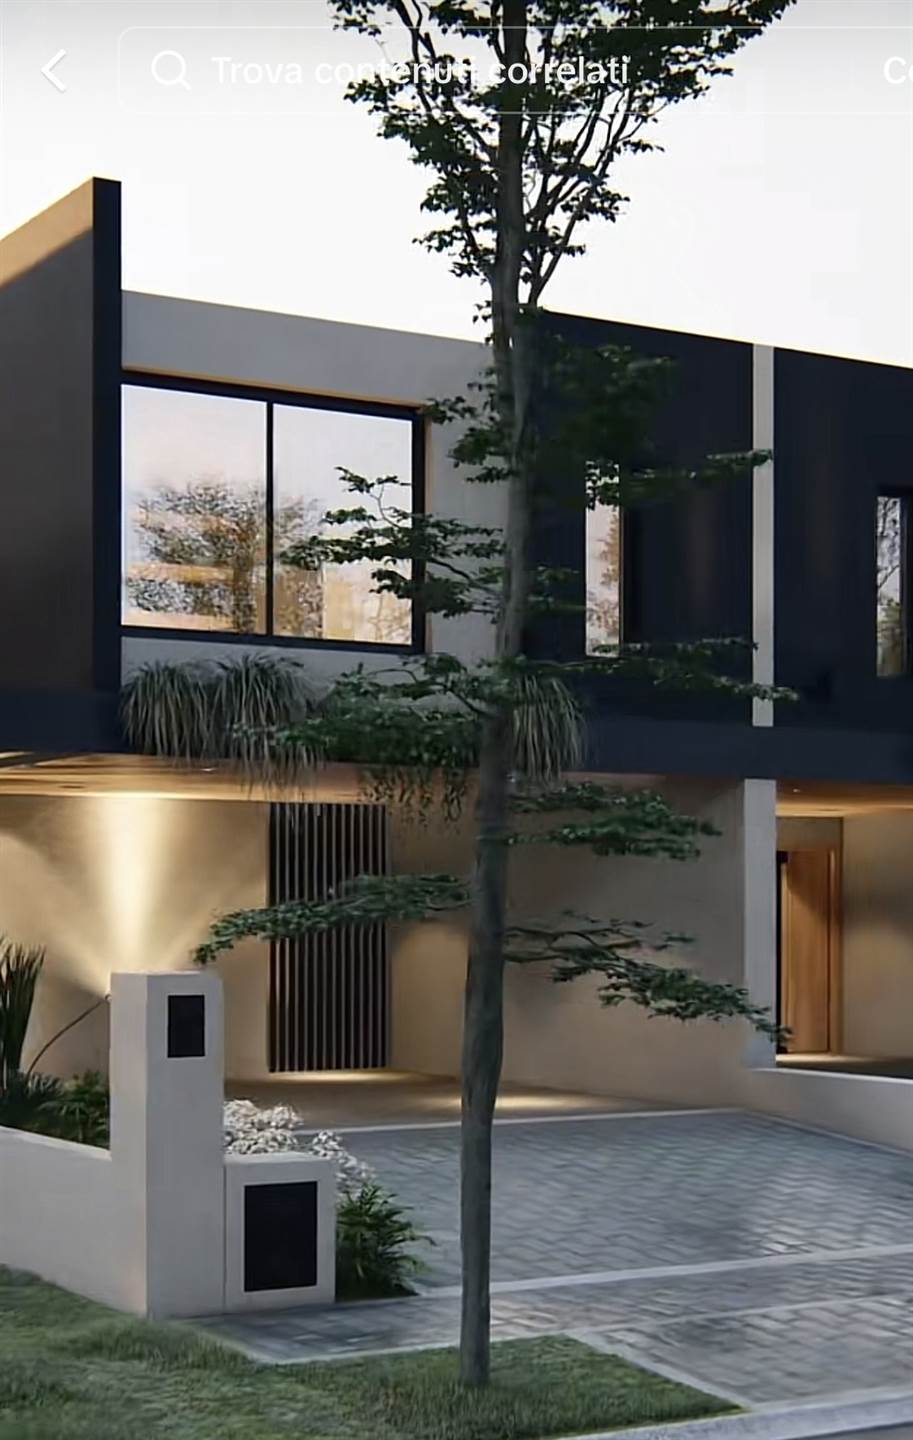 Villa Bifamiliare in vendita a Albignasego, 5 locali, prezzo € 435.000 | PortaleAgenzieImmobiliari.it